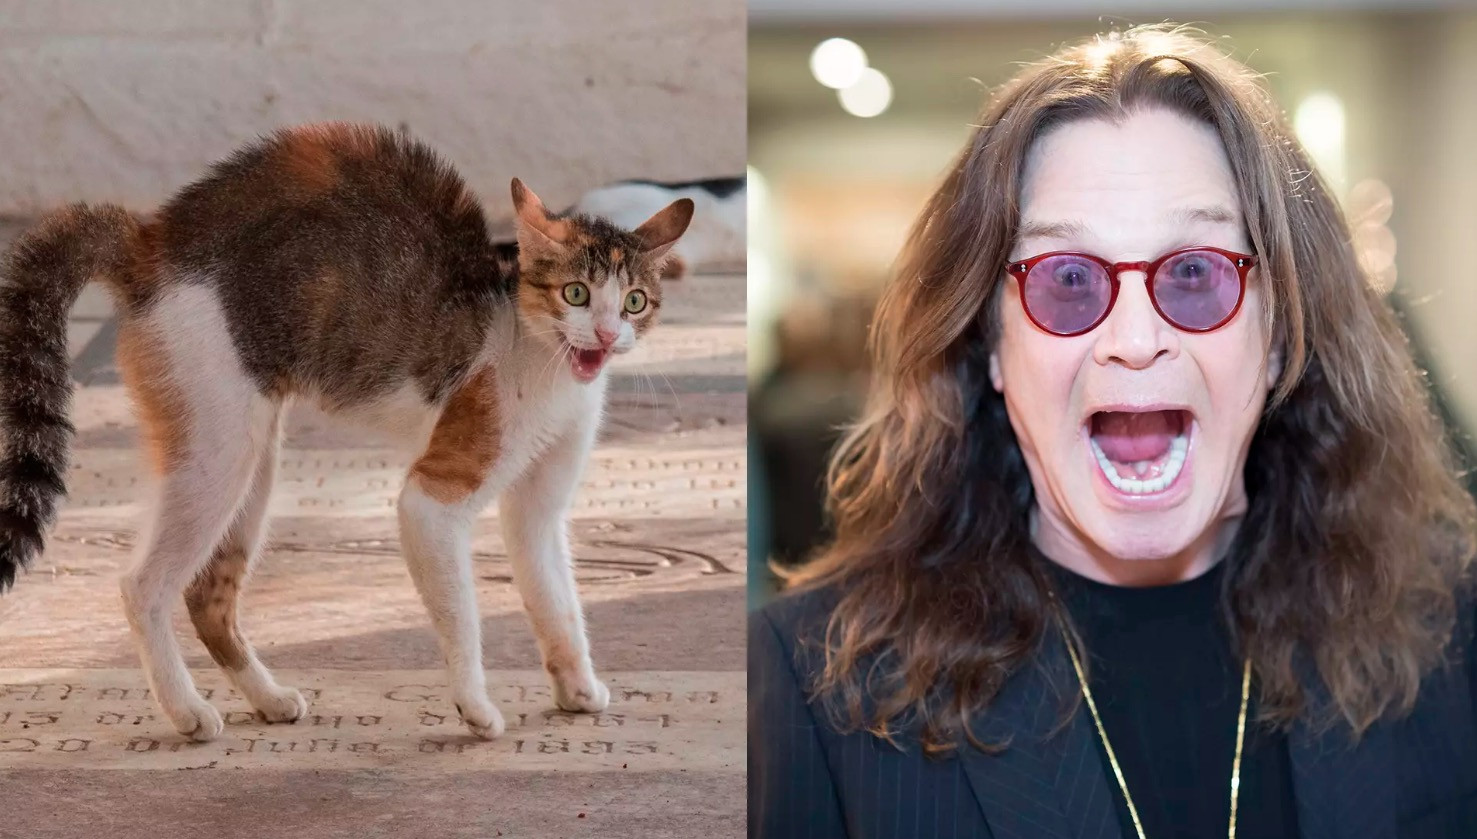 Σε εκστρατεία της PETA για τις γάτες πρωταγωνιστεί ο Όζι Όσμπορν